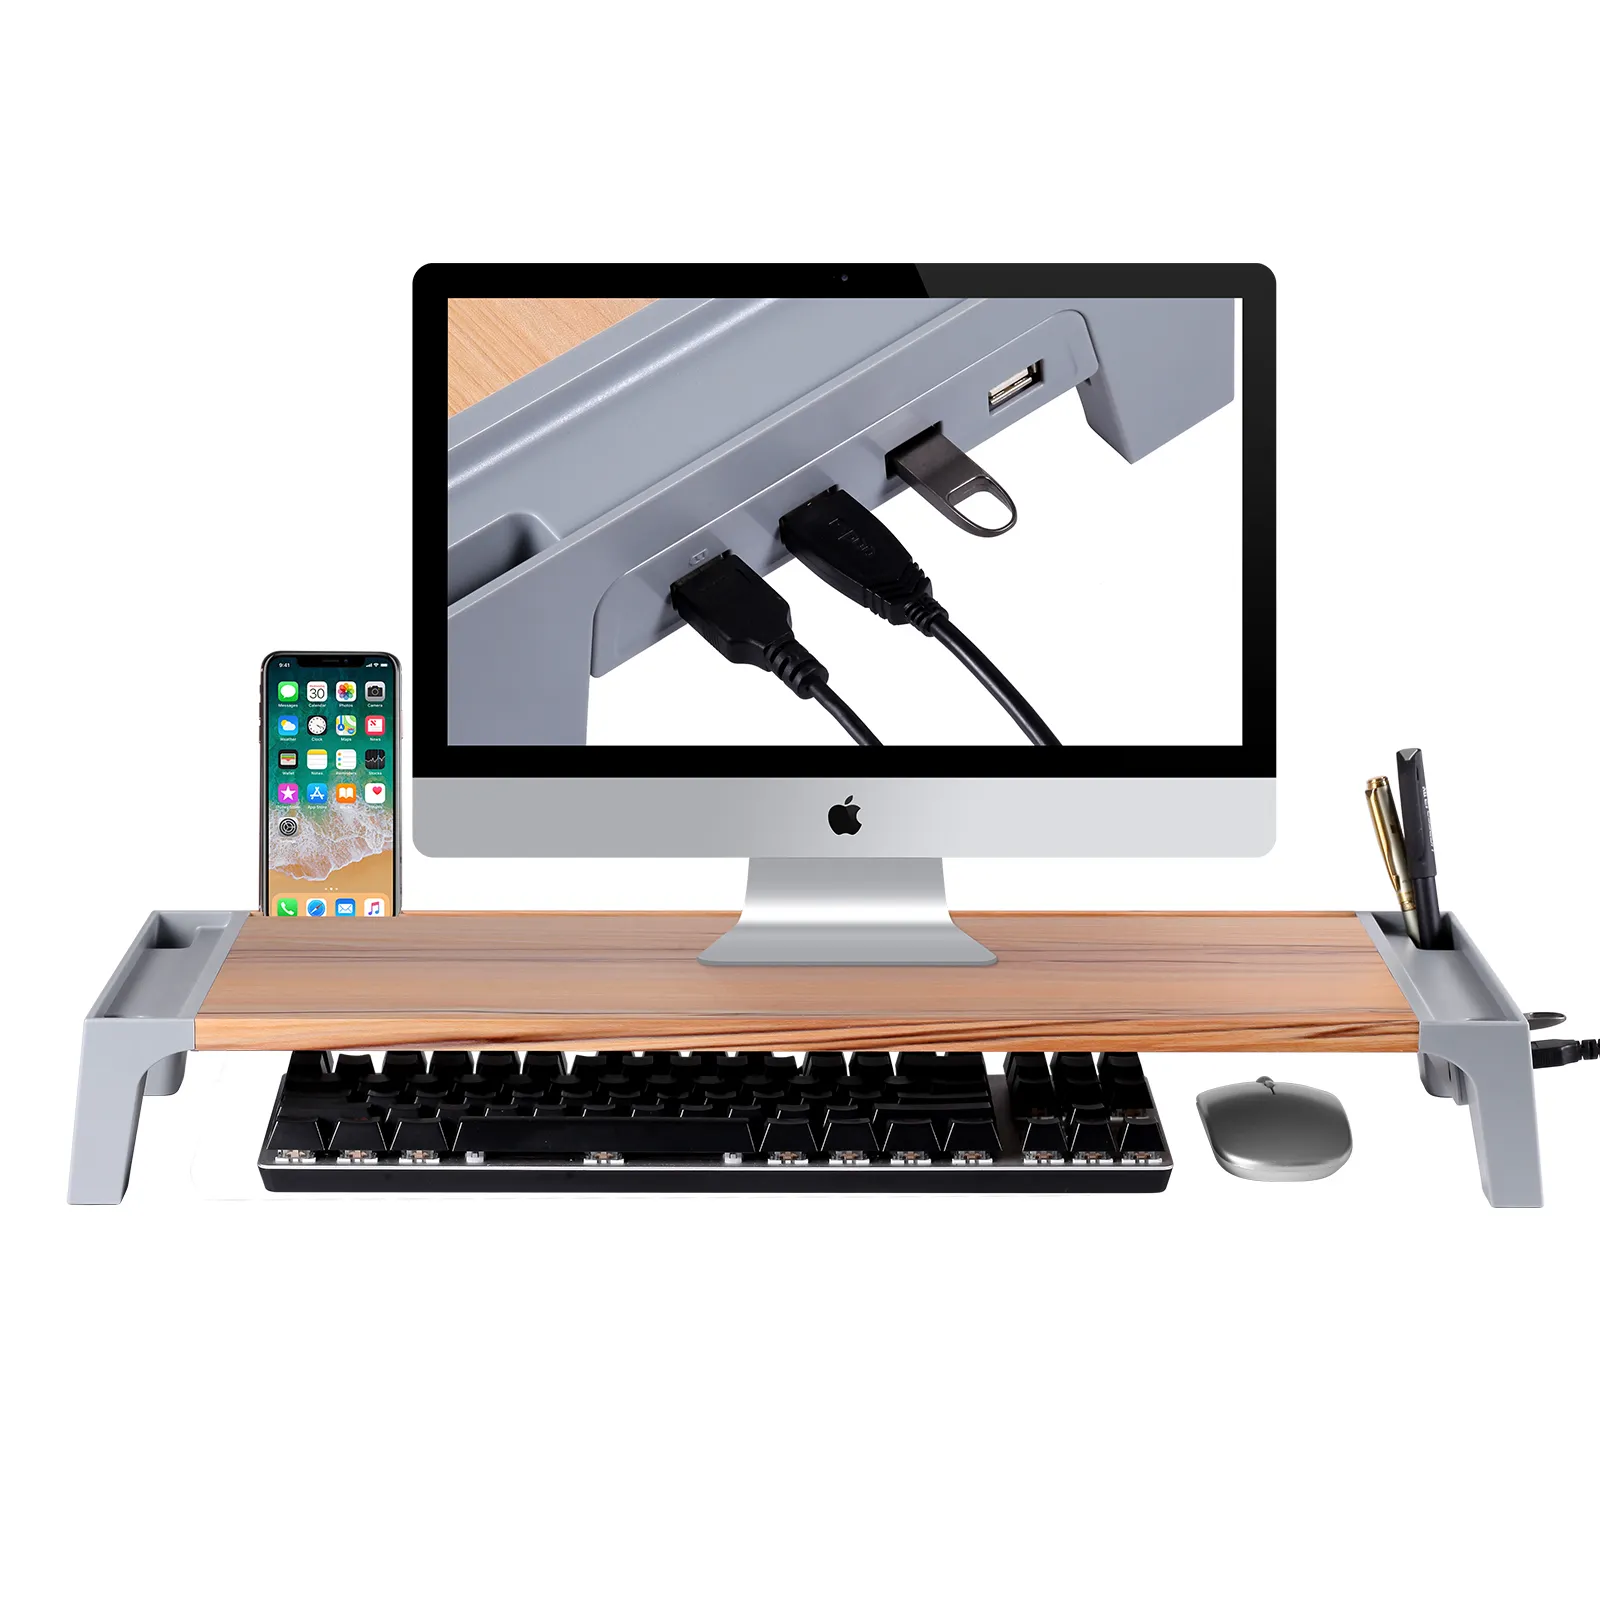 Tas hub usb perekat kurva vertikal kustom dengan tampilan produsen kulit ganda aluminium Putar dudukan laptop kayu vertikal